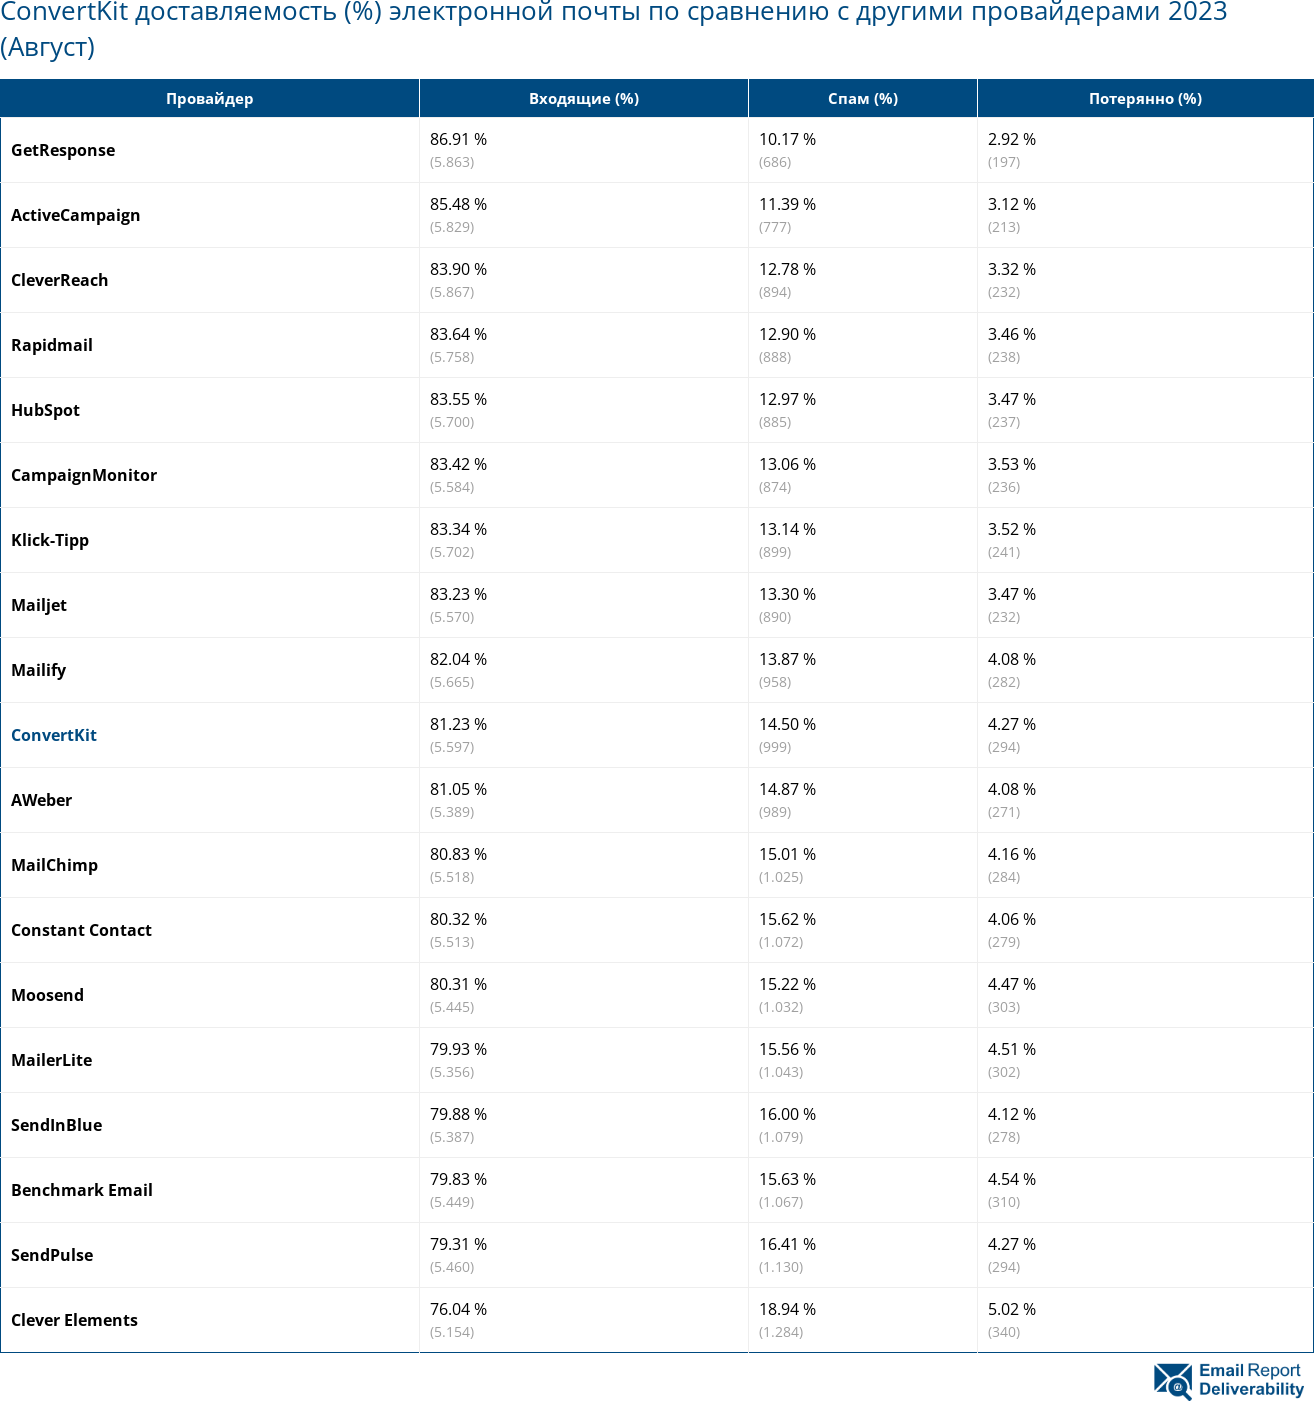 ConvertKit доставляемость (%) электронной почты по сравнению с другими провайдерами 2023 (Август)